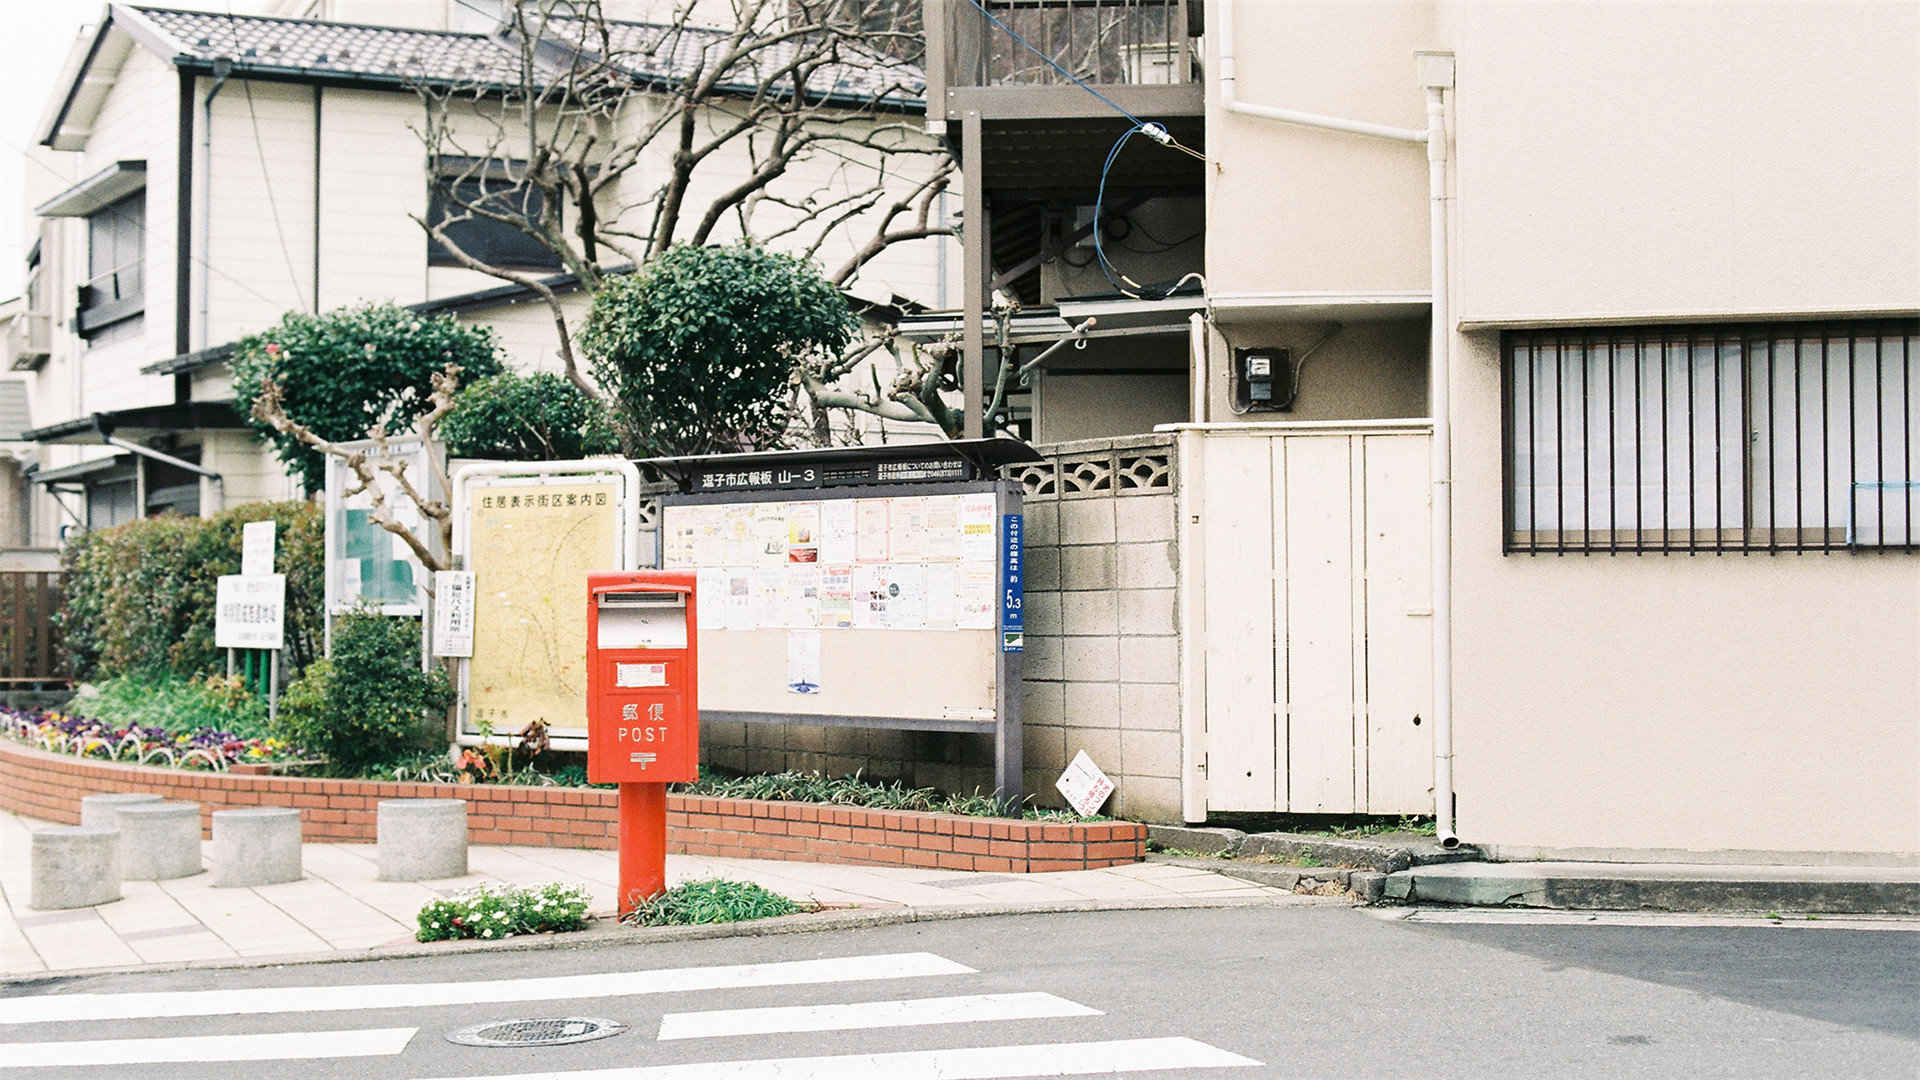 日本街头胶片风街景桌面壁纸-